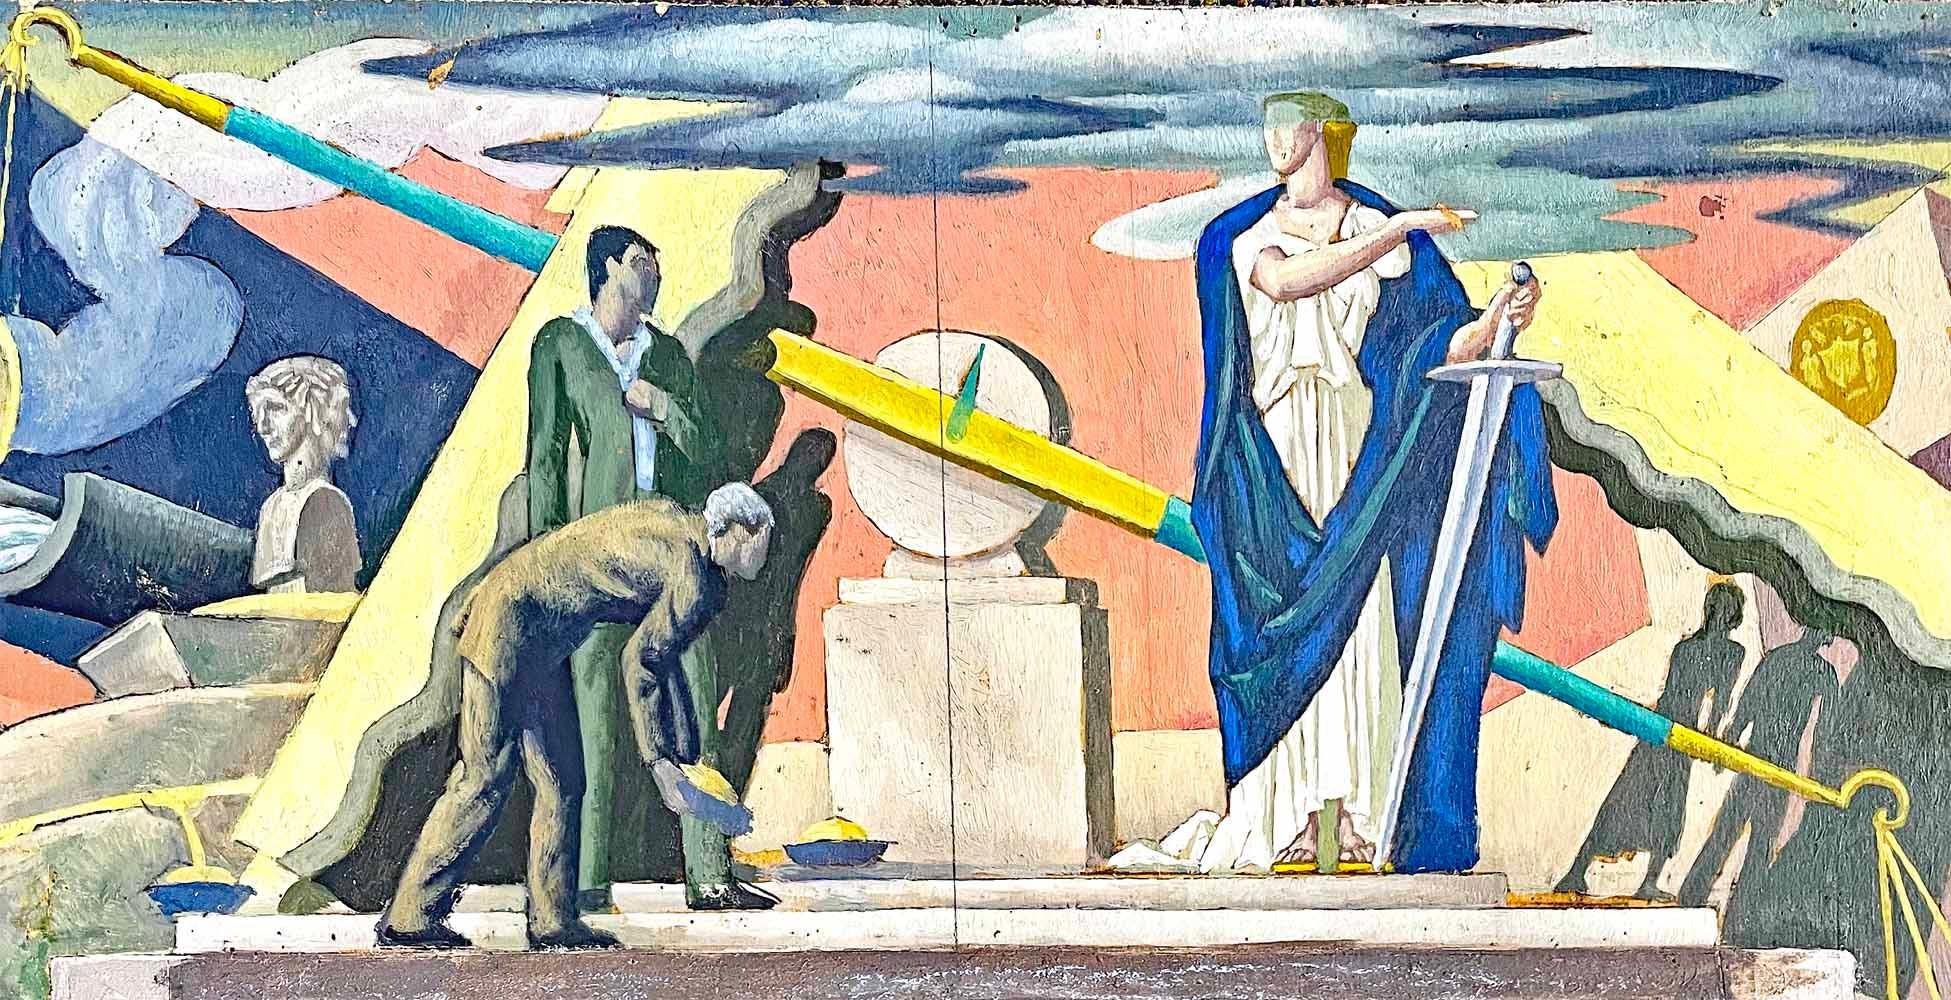 Exemple frappant de l'art mural de la WPA, cette étude pour l'une des peintures murales proposées pour la nouvelle Cour suprême du Queens -- un projet de la Works Progress Administration des années 1930.  dans le Queens, à New York, a été peint par